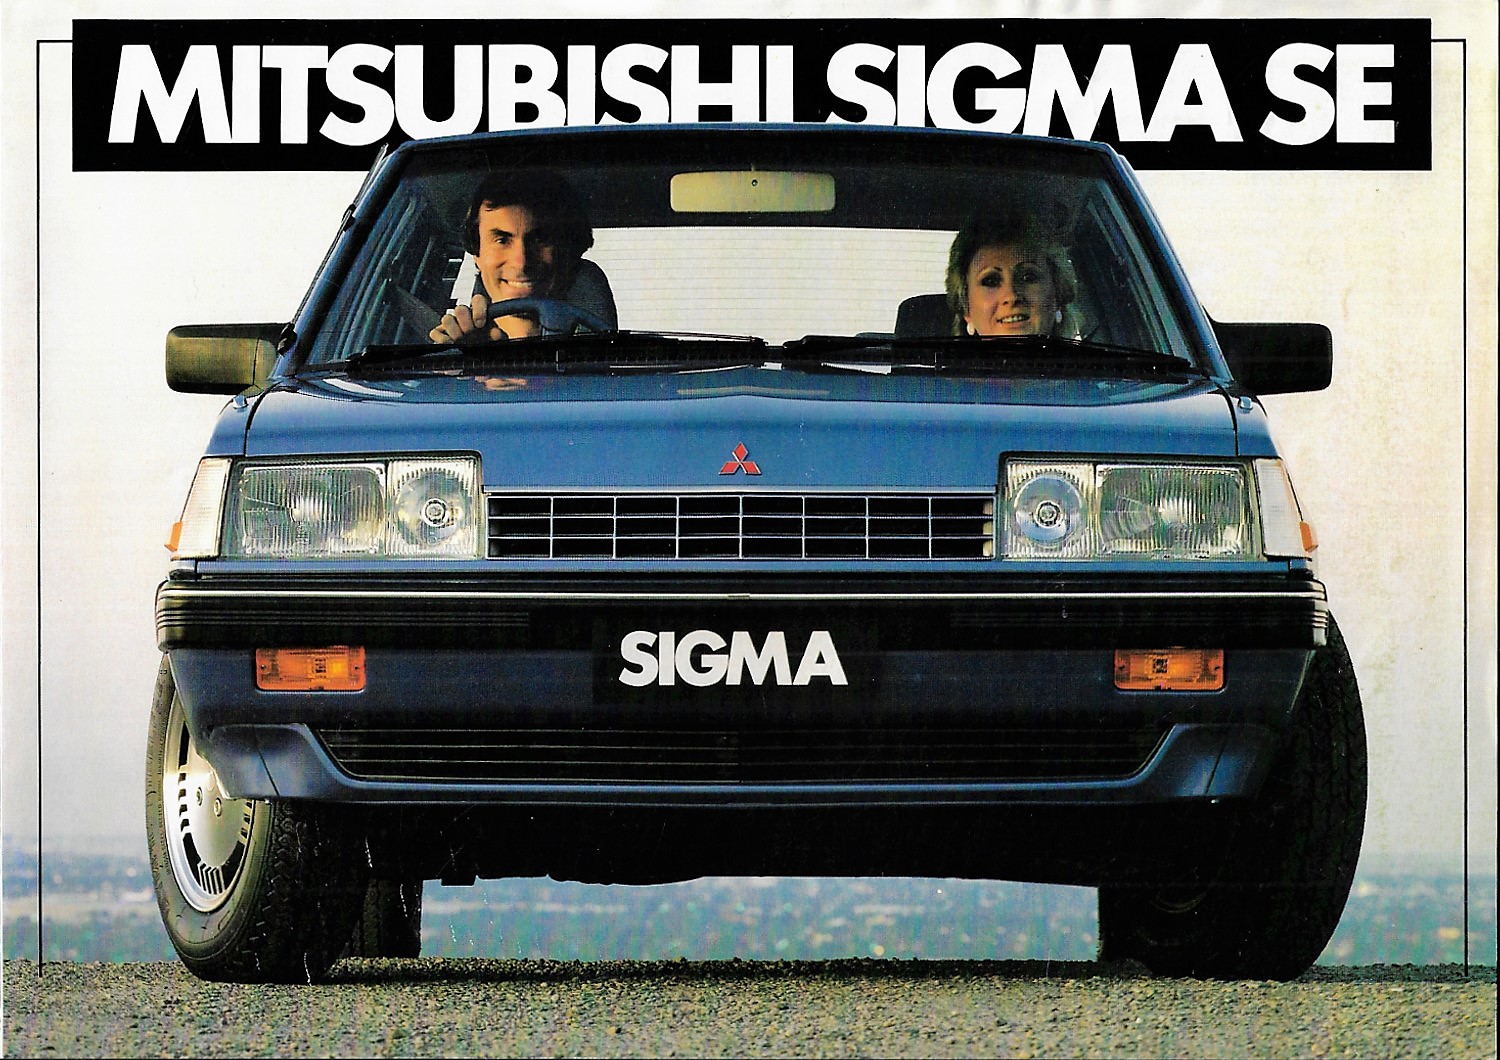 1984 Mitsubishi Sigma SE Brochure Australia 01